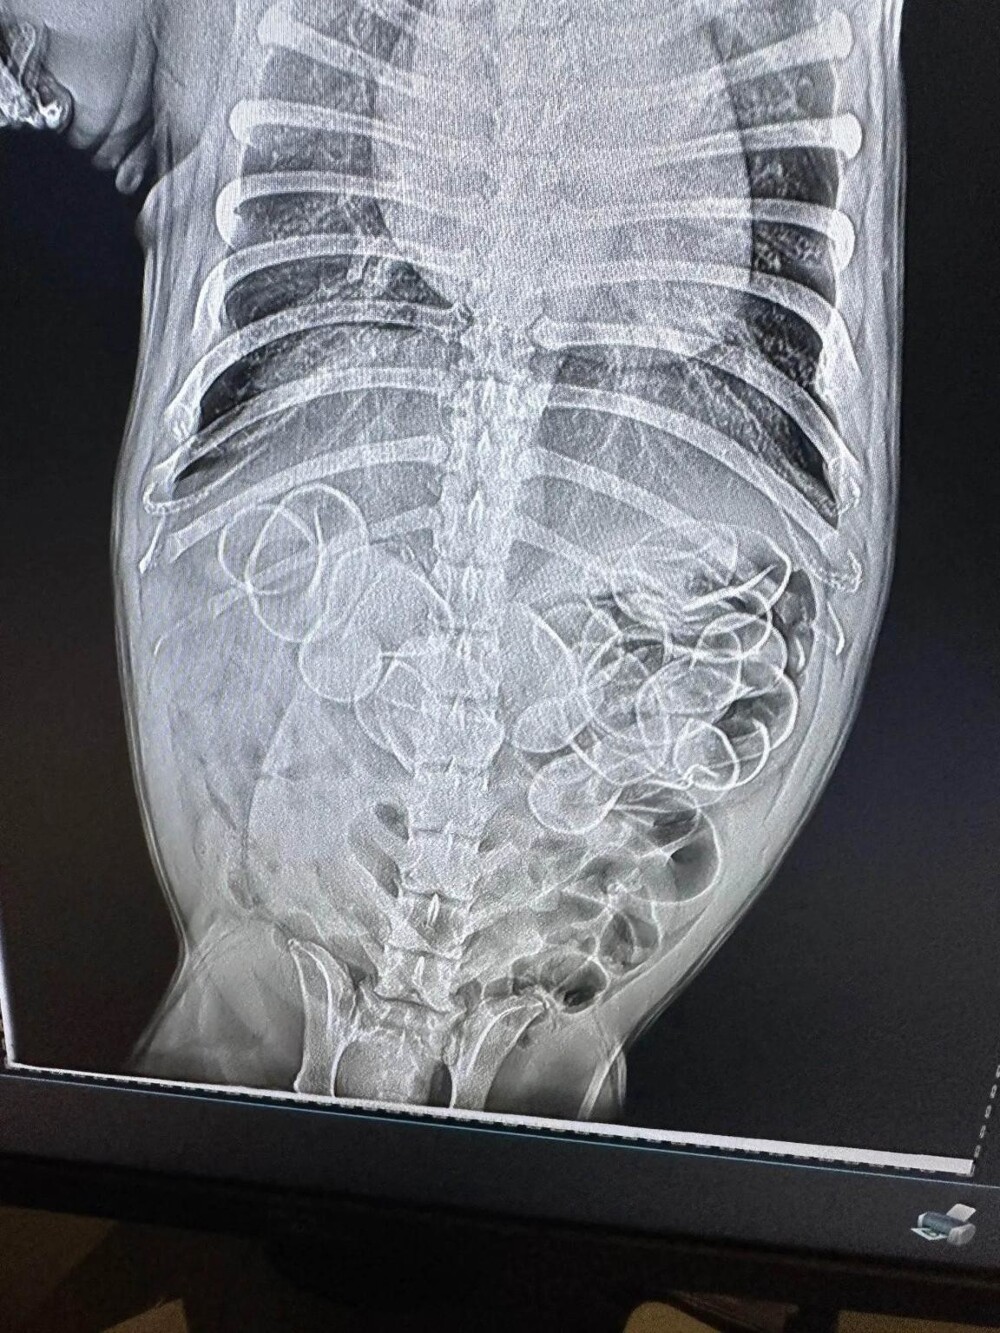 В желудке бульдога обнаружили 11 резиновых уточек